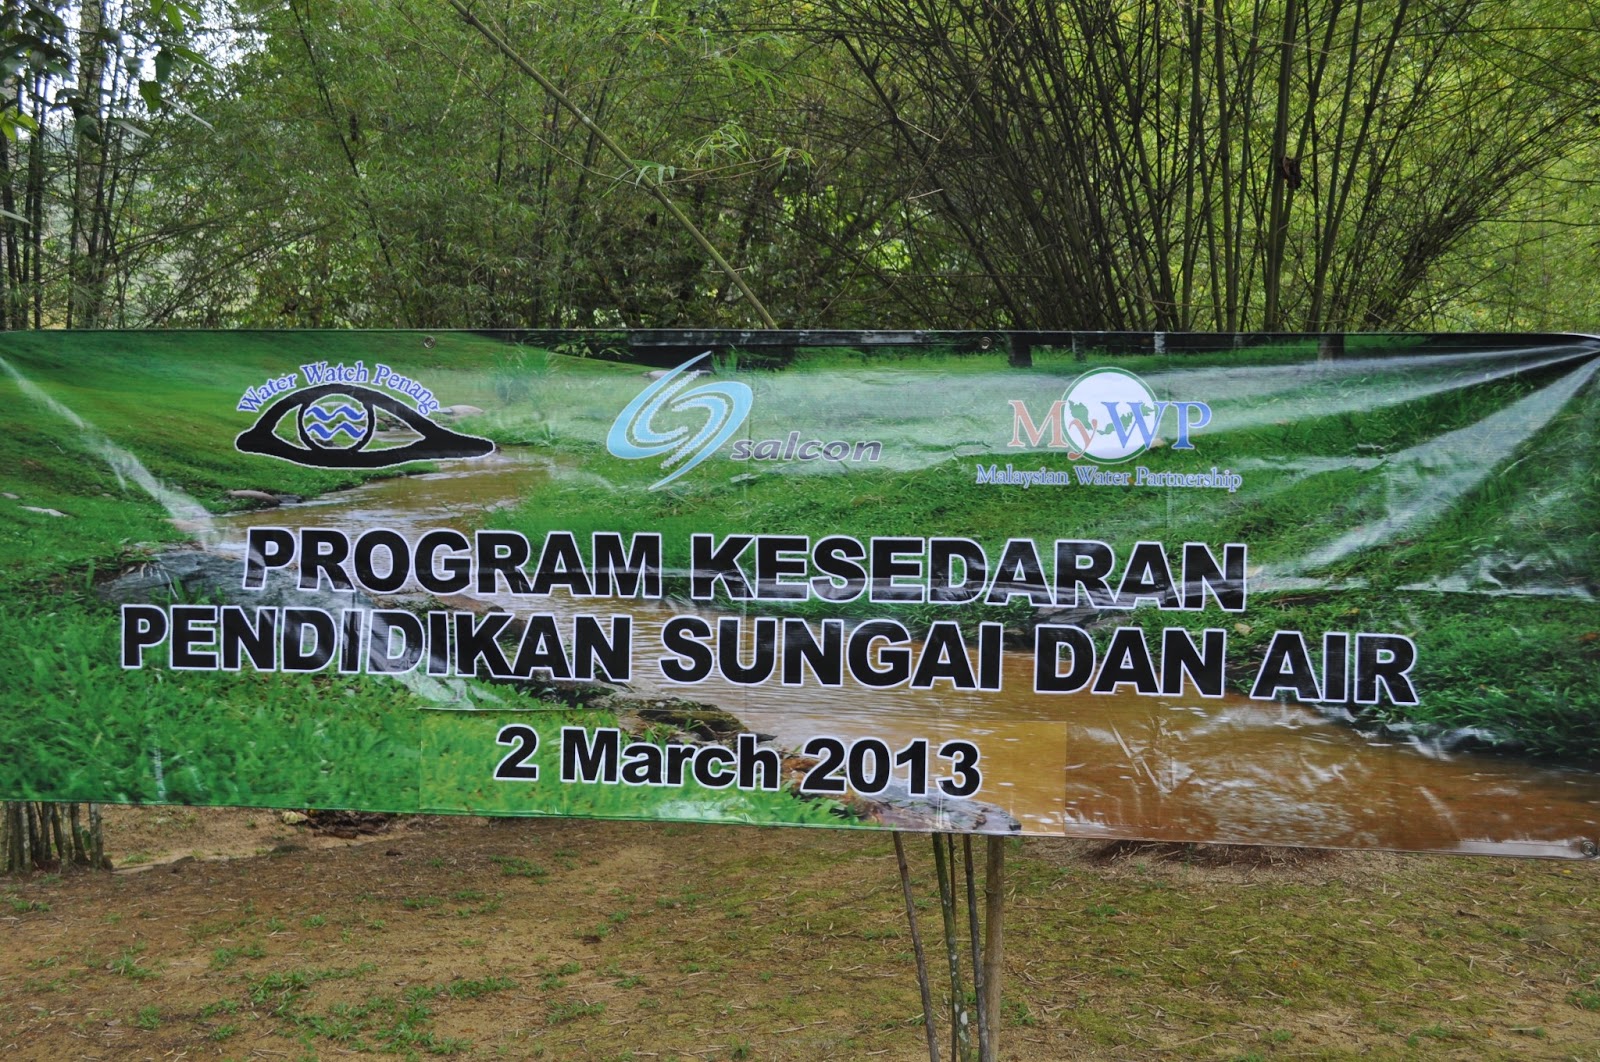 Sekolah Kebangsaan Taman Putra Perdana: Program Kesedaran 